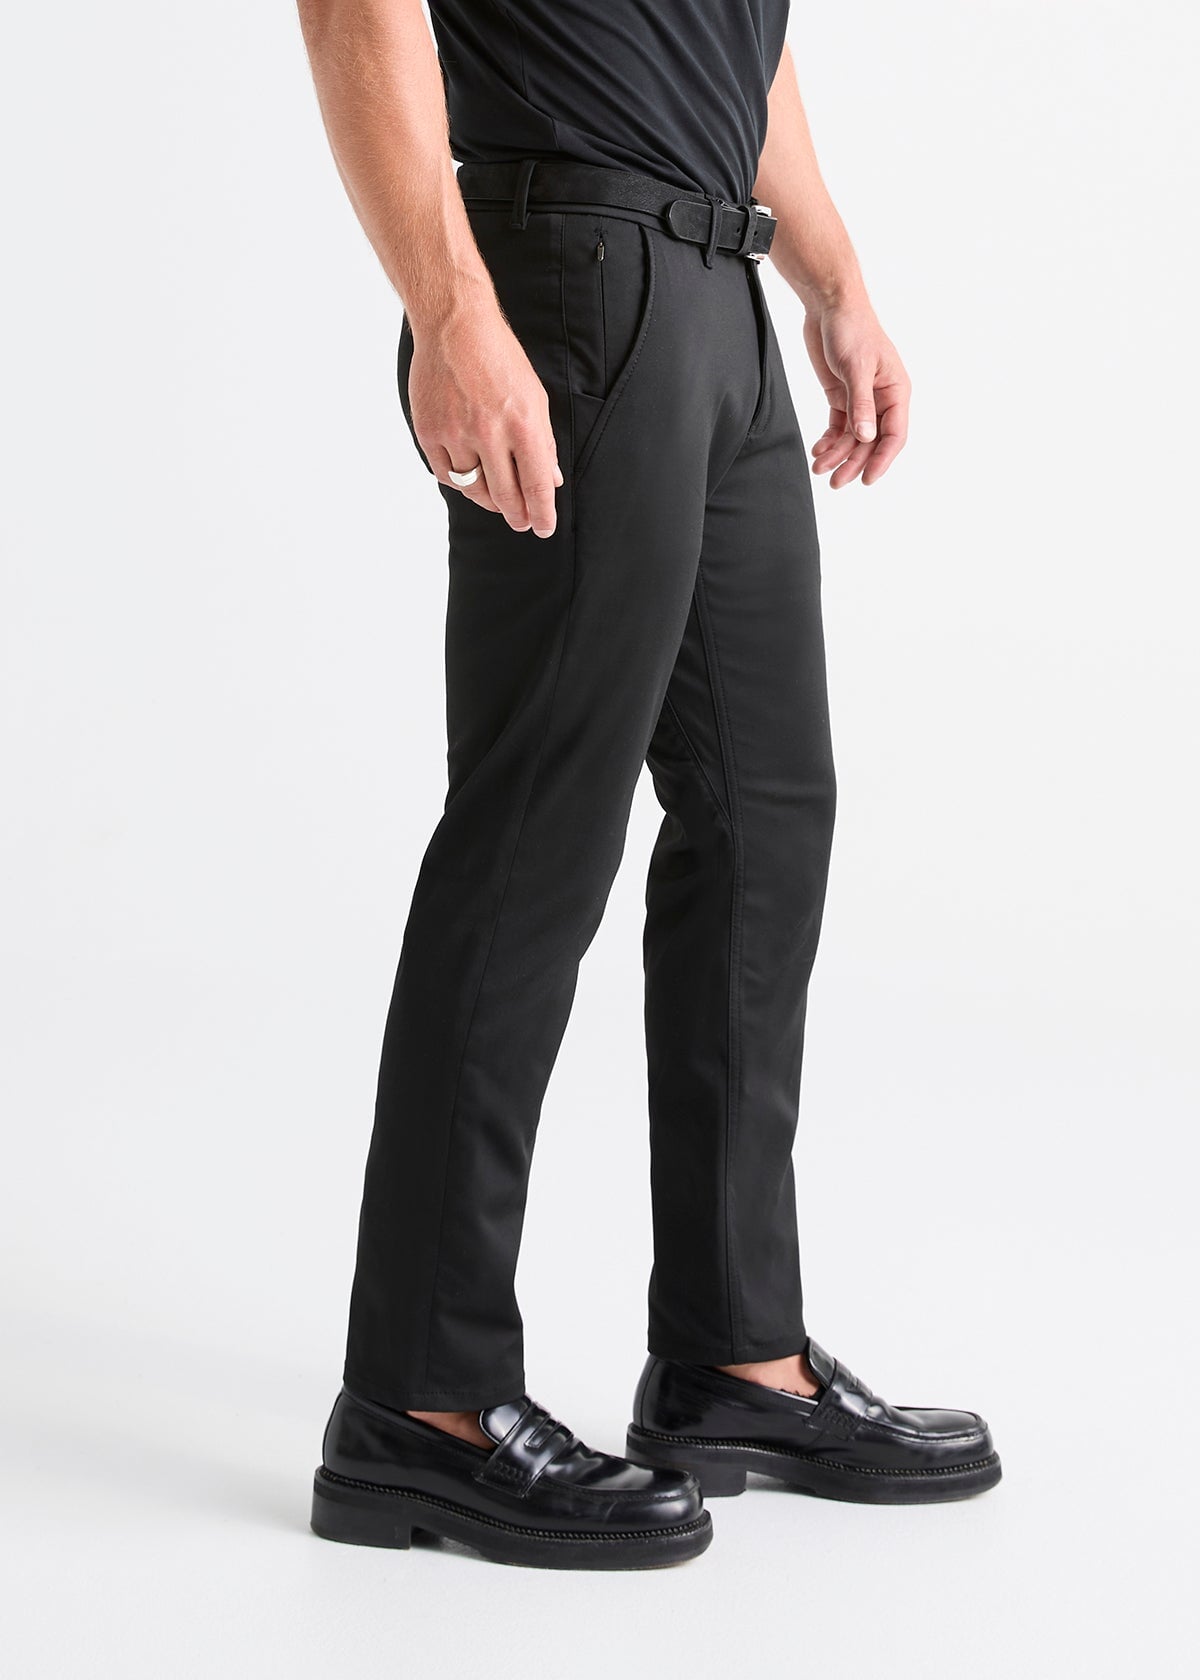 Men Chef Work Pants Kitchen Baggy Trouser Restaurant Black Uniform Pants M -4XL#h | eBay